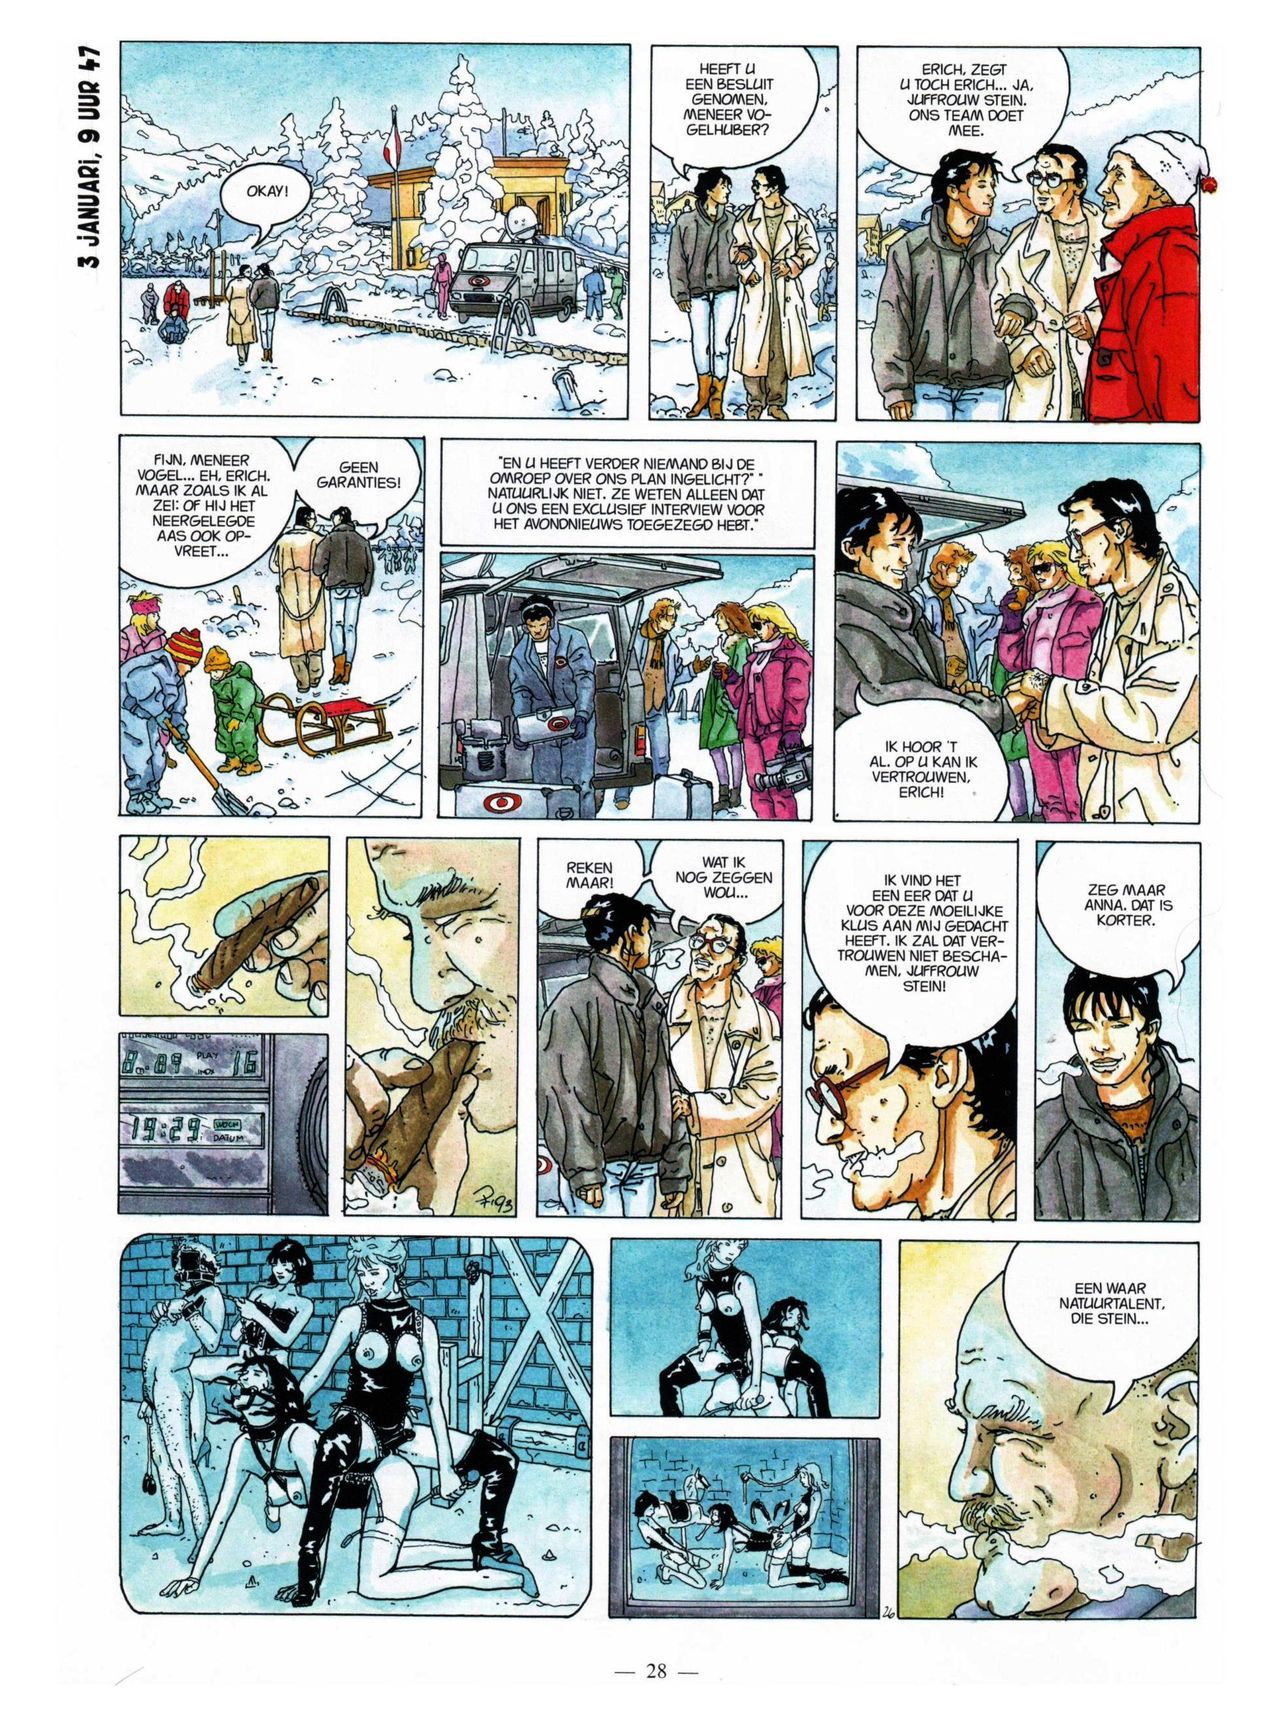 Anna Stein - 03 - De Laatste Alpengloed (Dutch) Engelstalige strips die op deze site staan, hier is de Nederlandse uitgave! 28